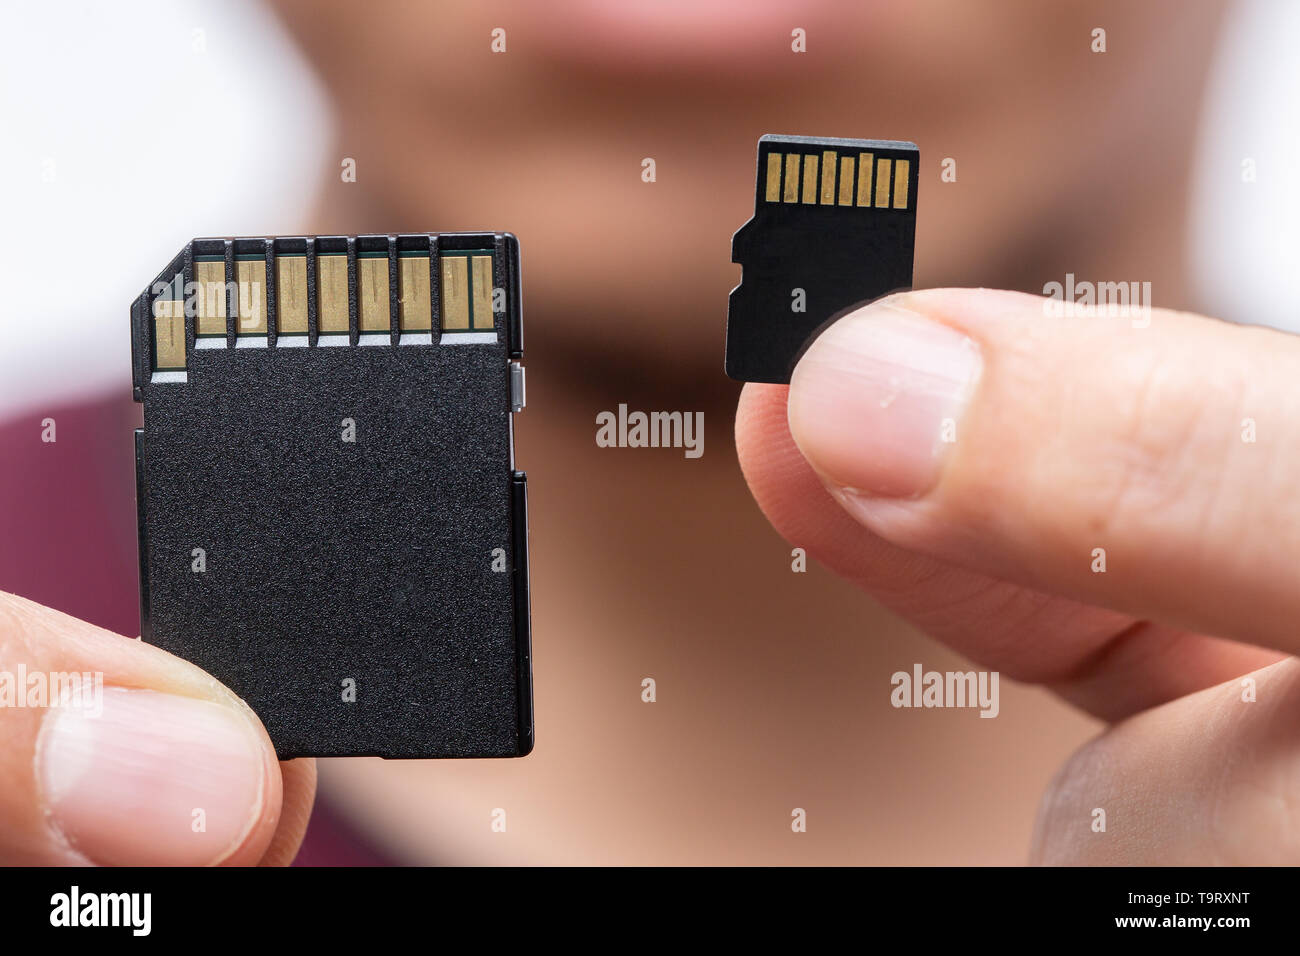 Importa el tamaño de memoria de almacenamiento digital concepto,Tarjeta SD y la tarjeta SD micro comparar en el mango Foto de stock